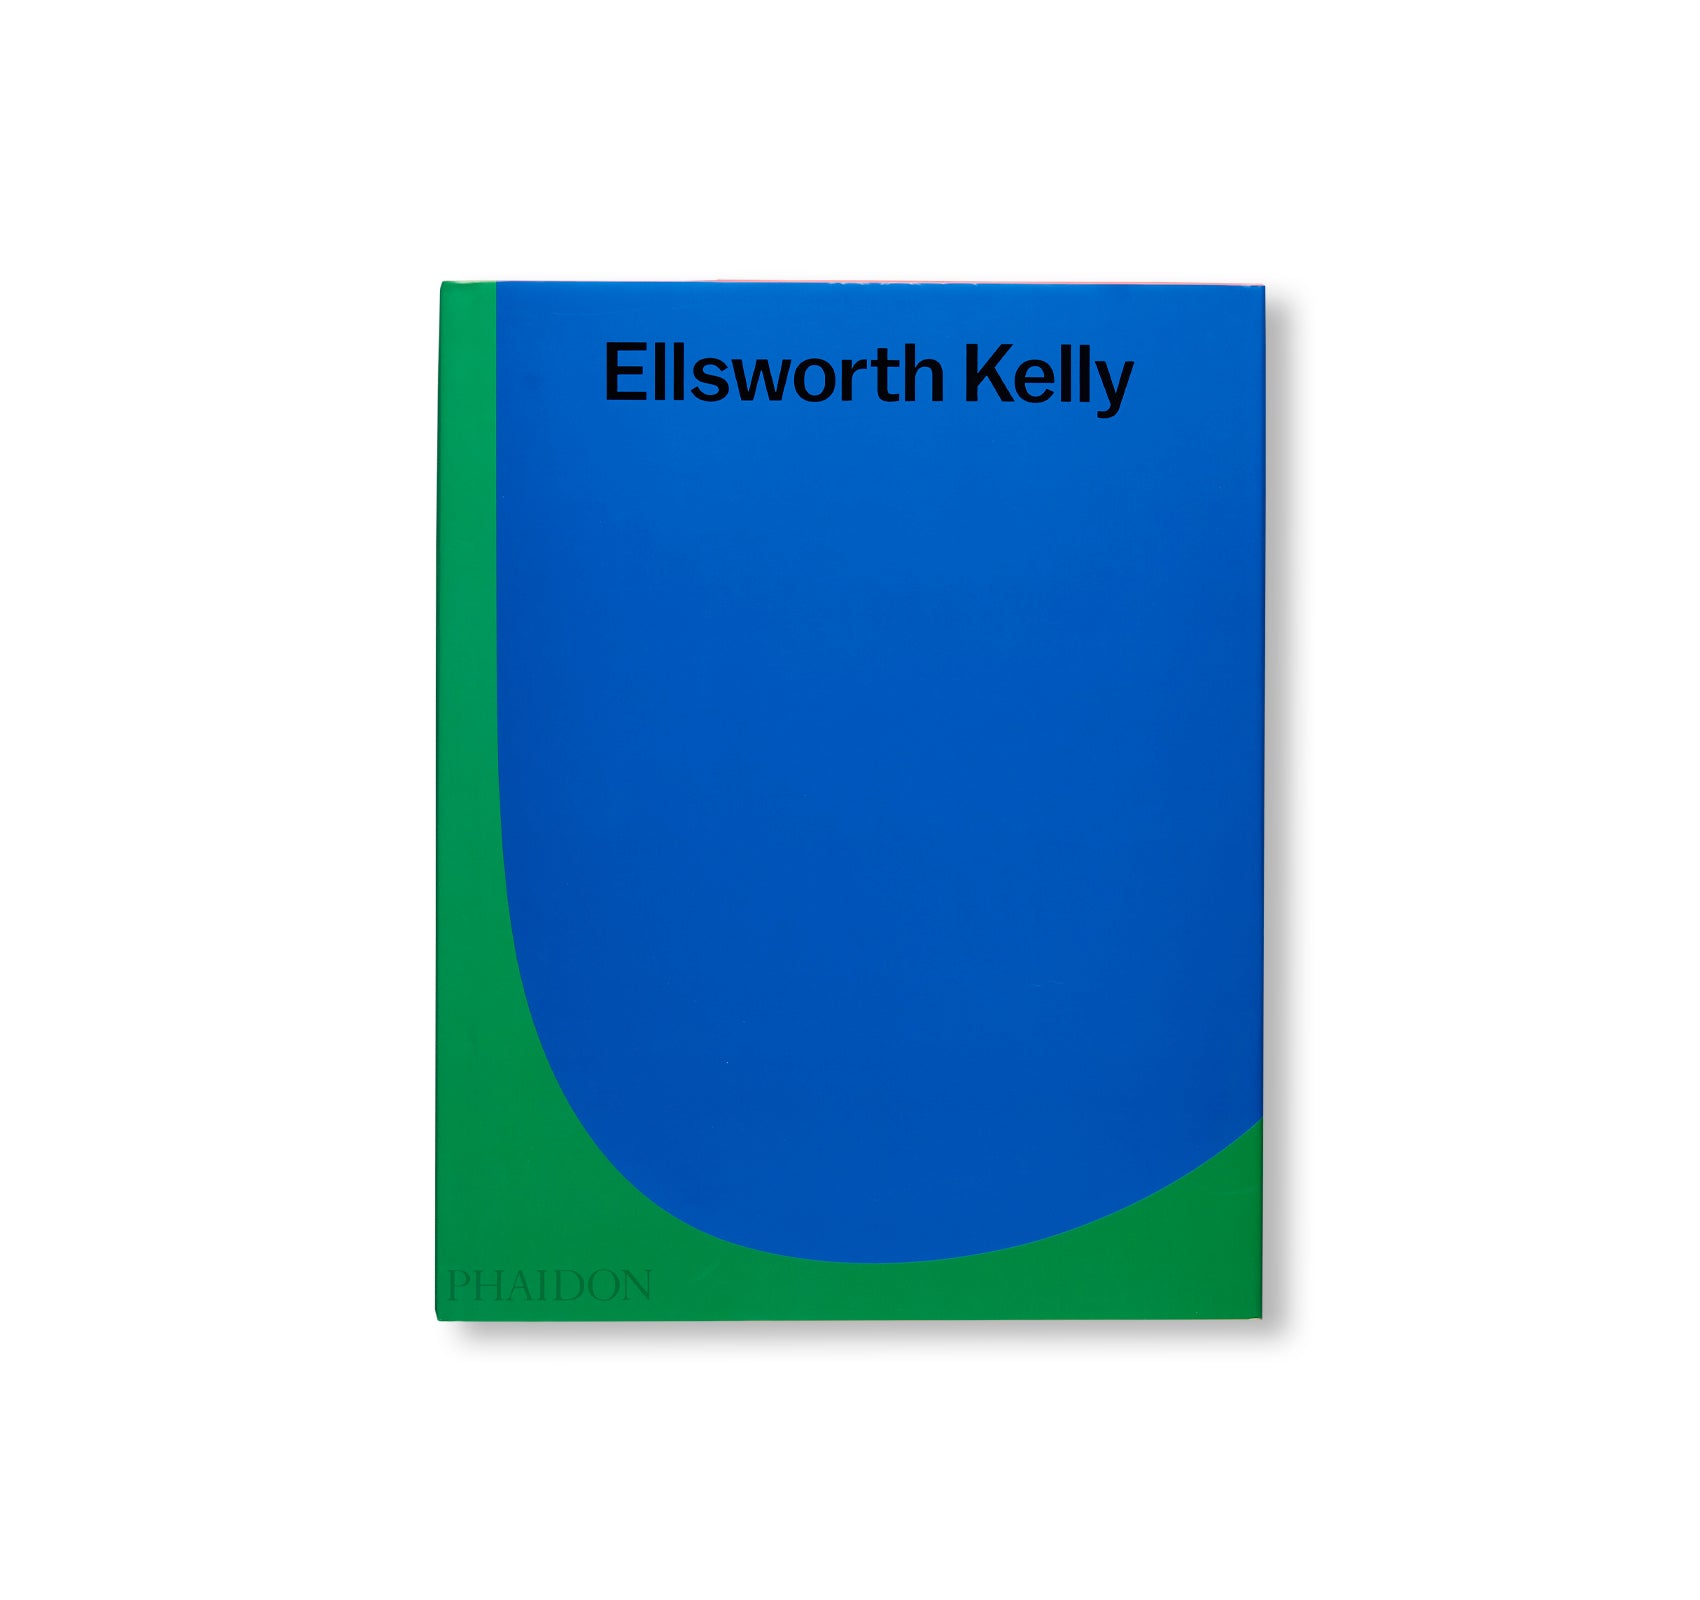 ELLSWORTH KELLY (2018) by Ellsworth Kelly